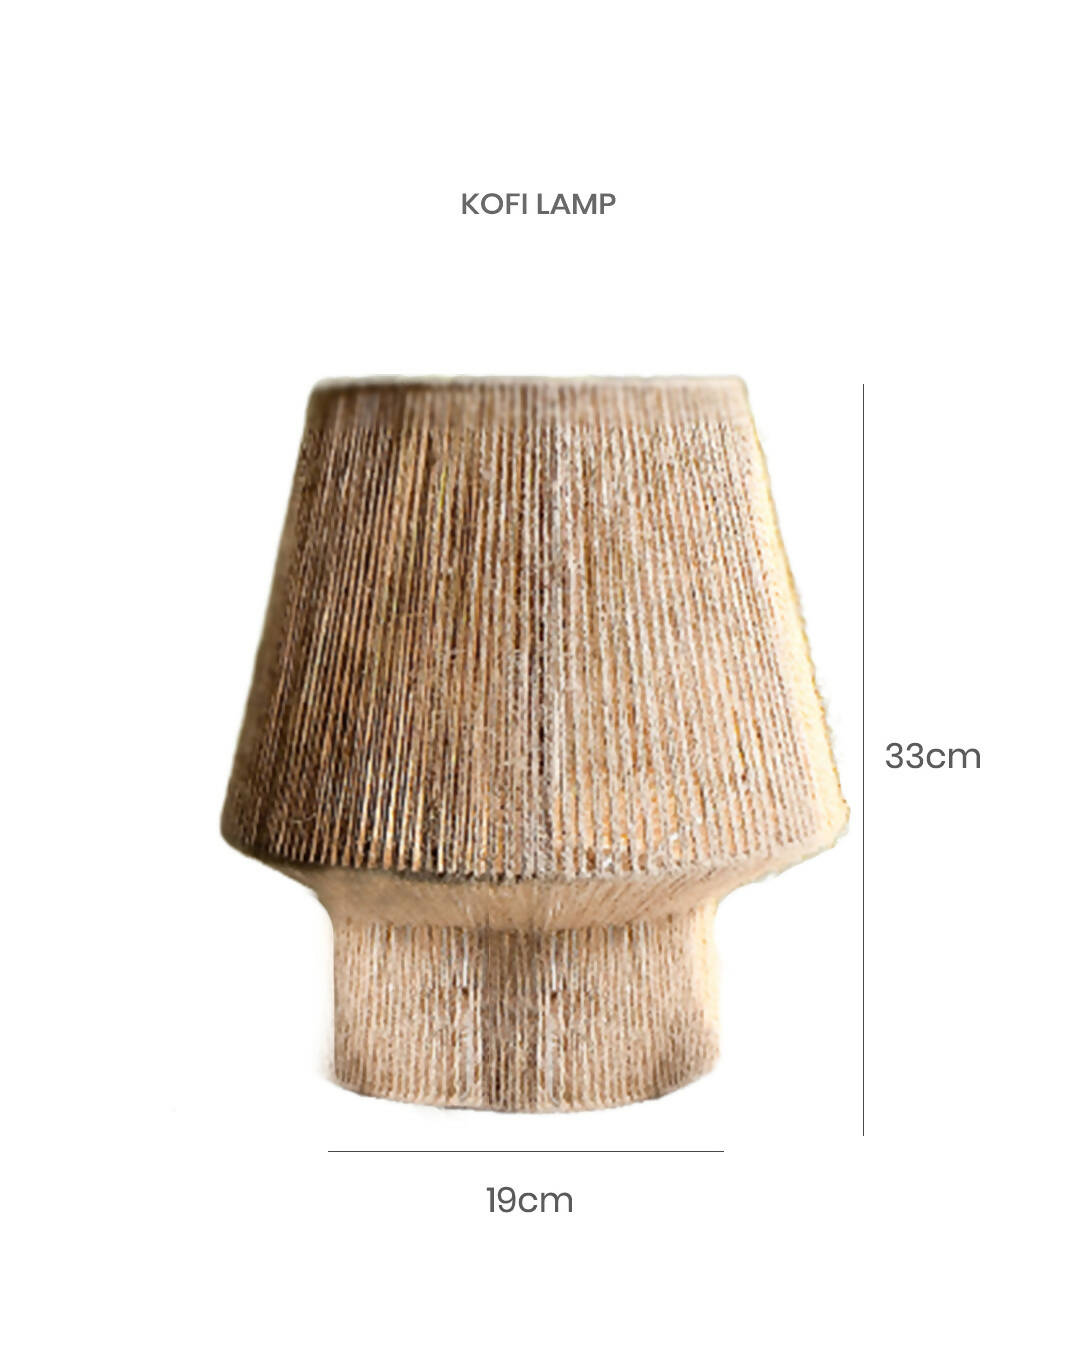 Kofi Lamp